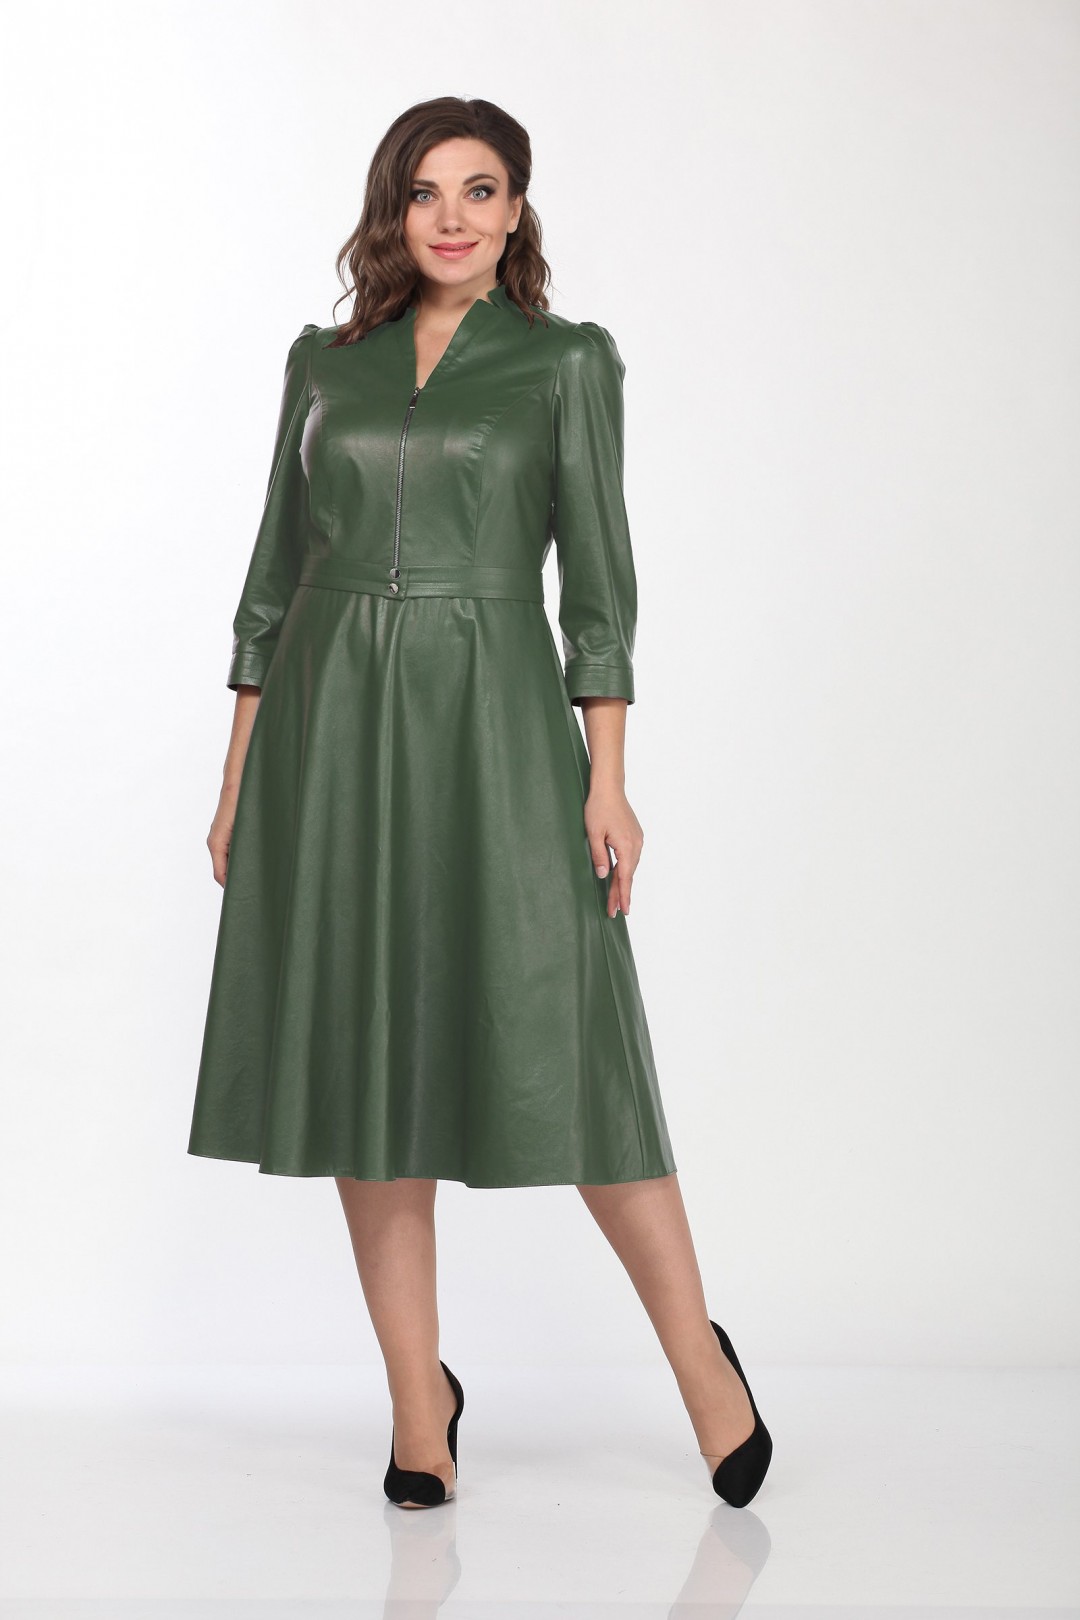 Платье LadyStyleClassic 2185-1 зеленые тона